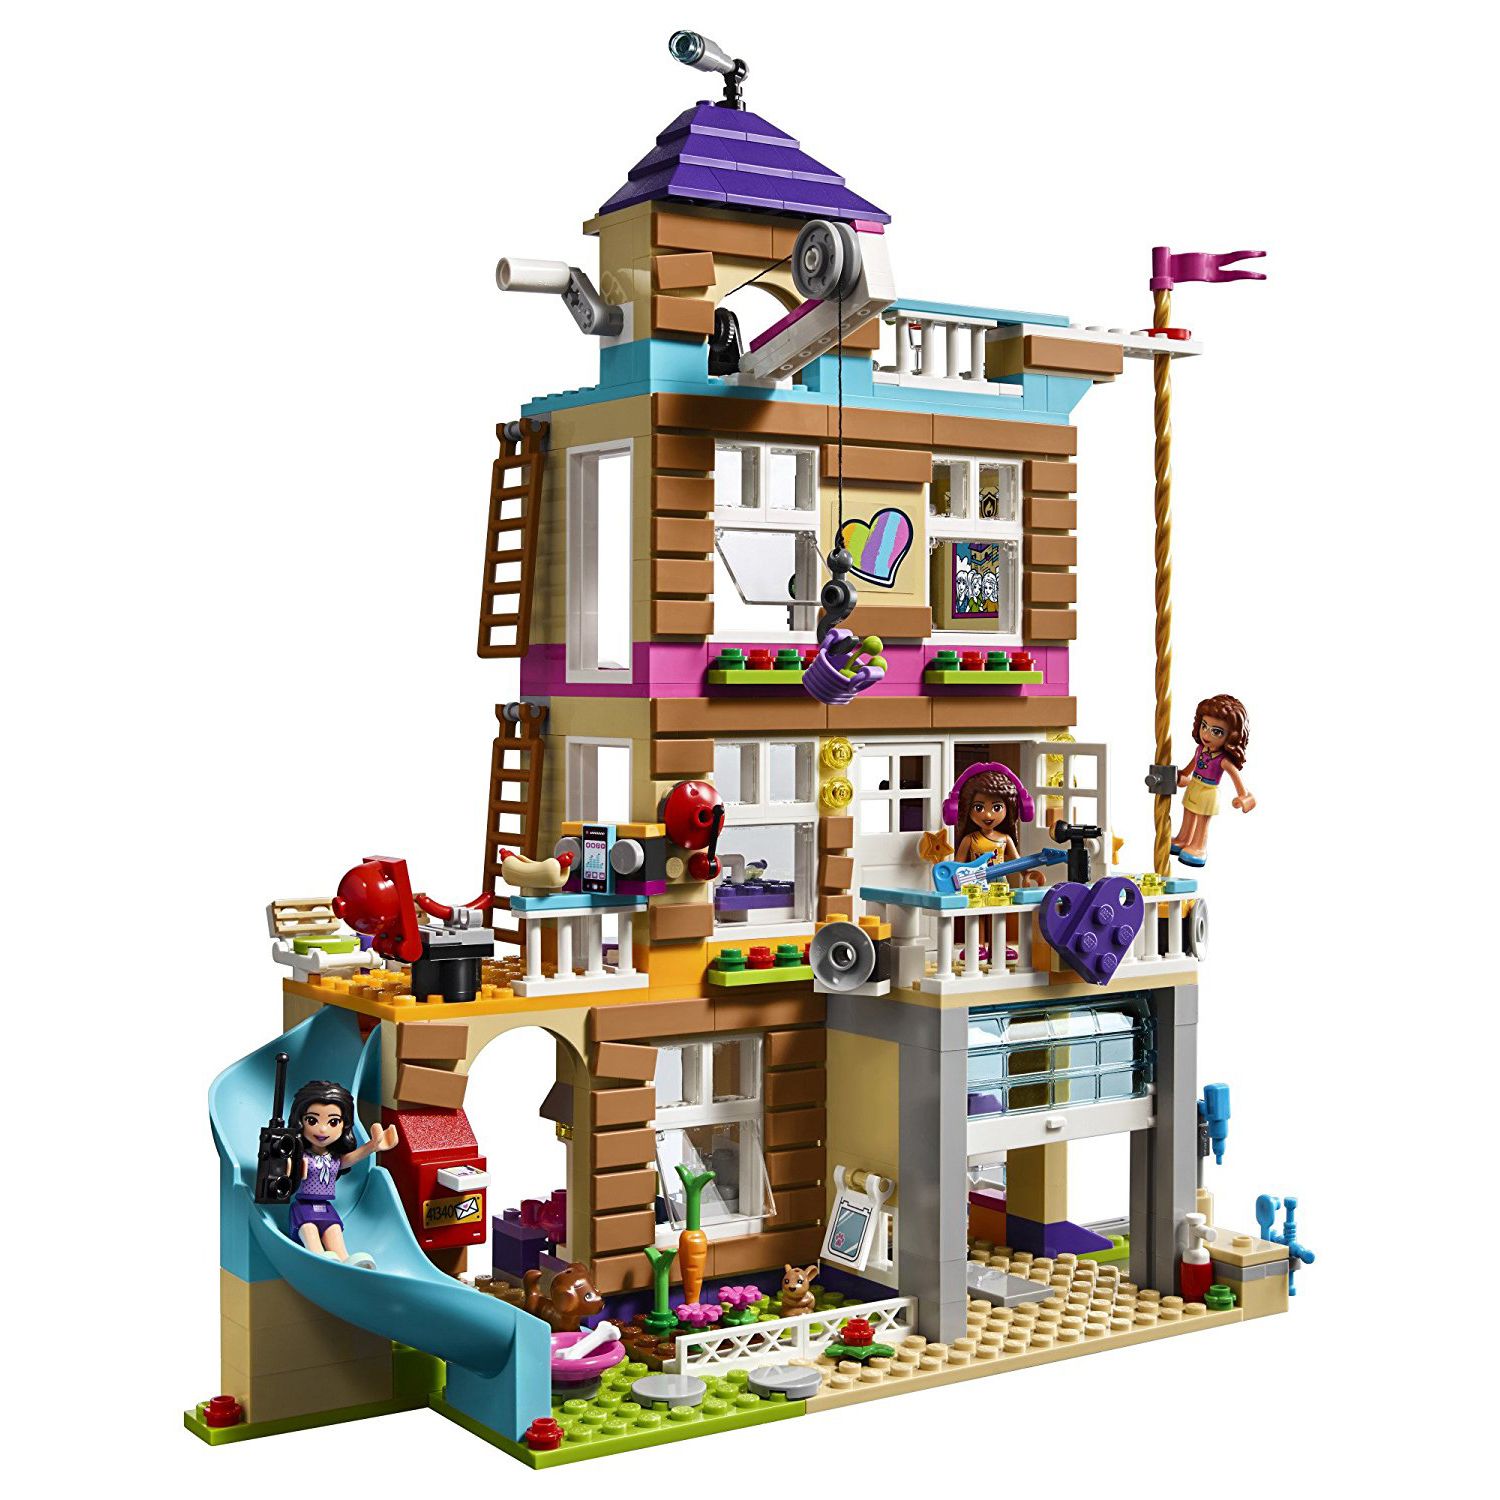 Лего Френдс: красочный и веселый мир дружбы и творчества